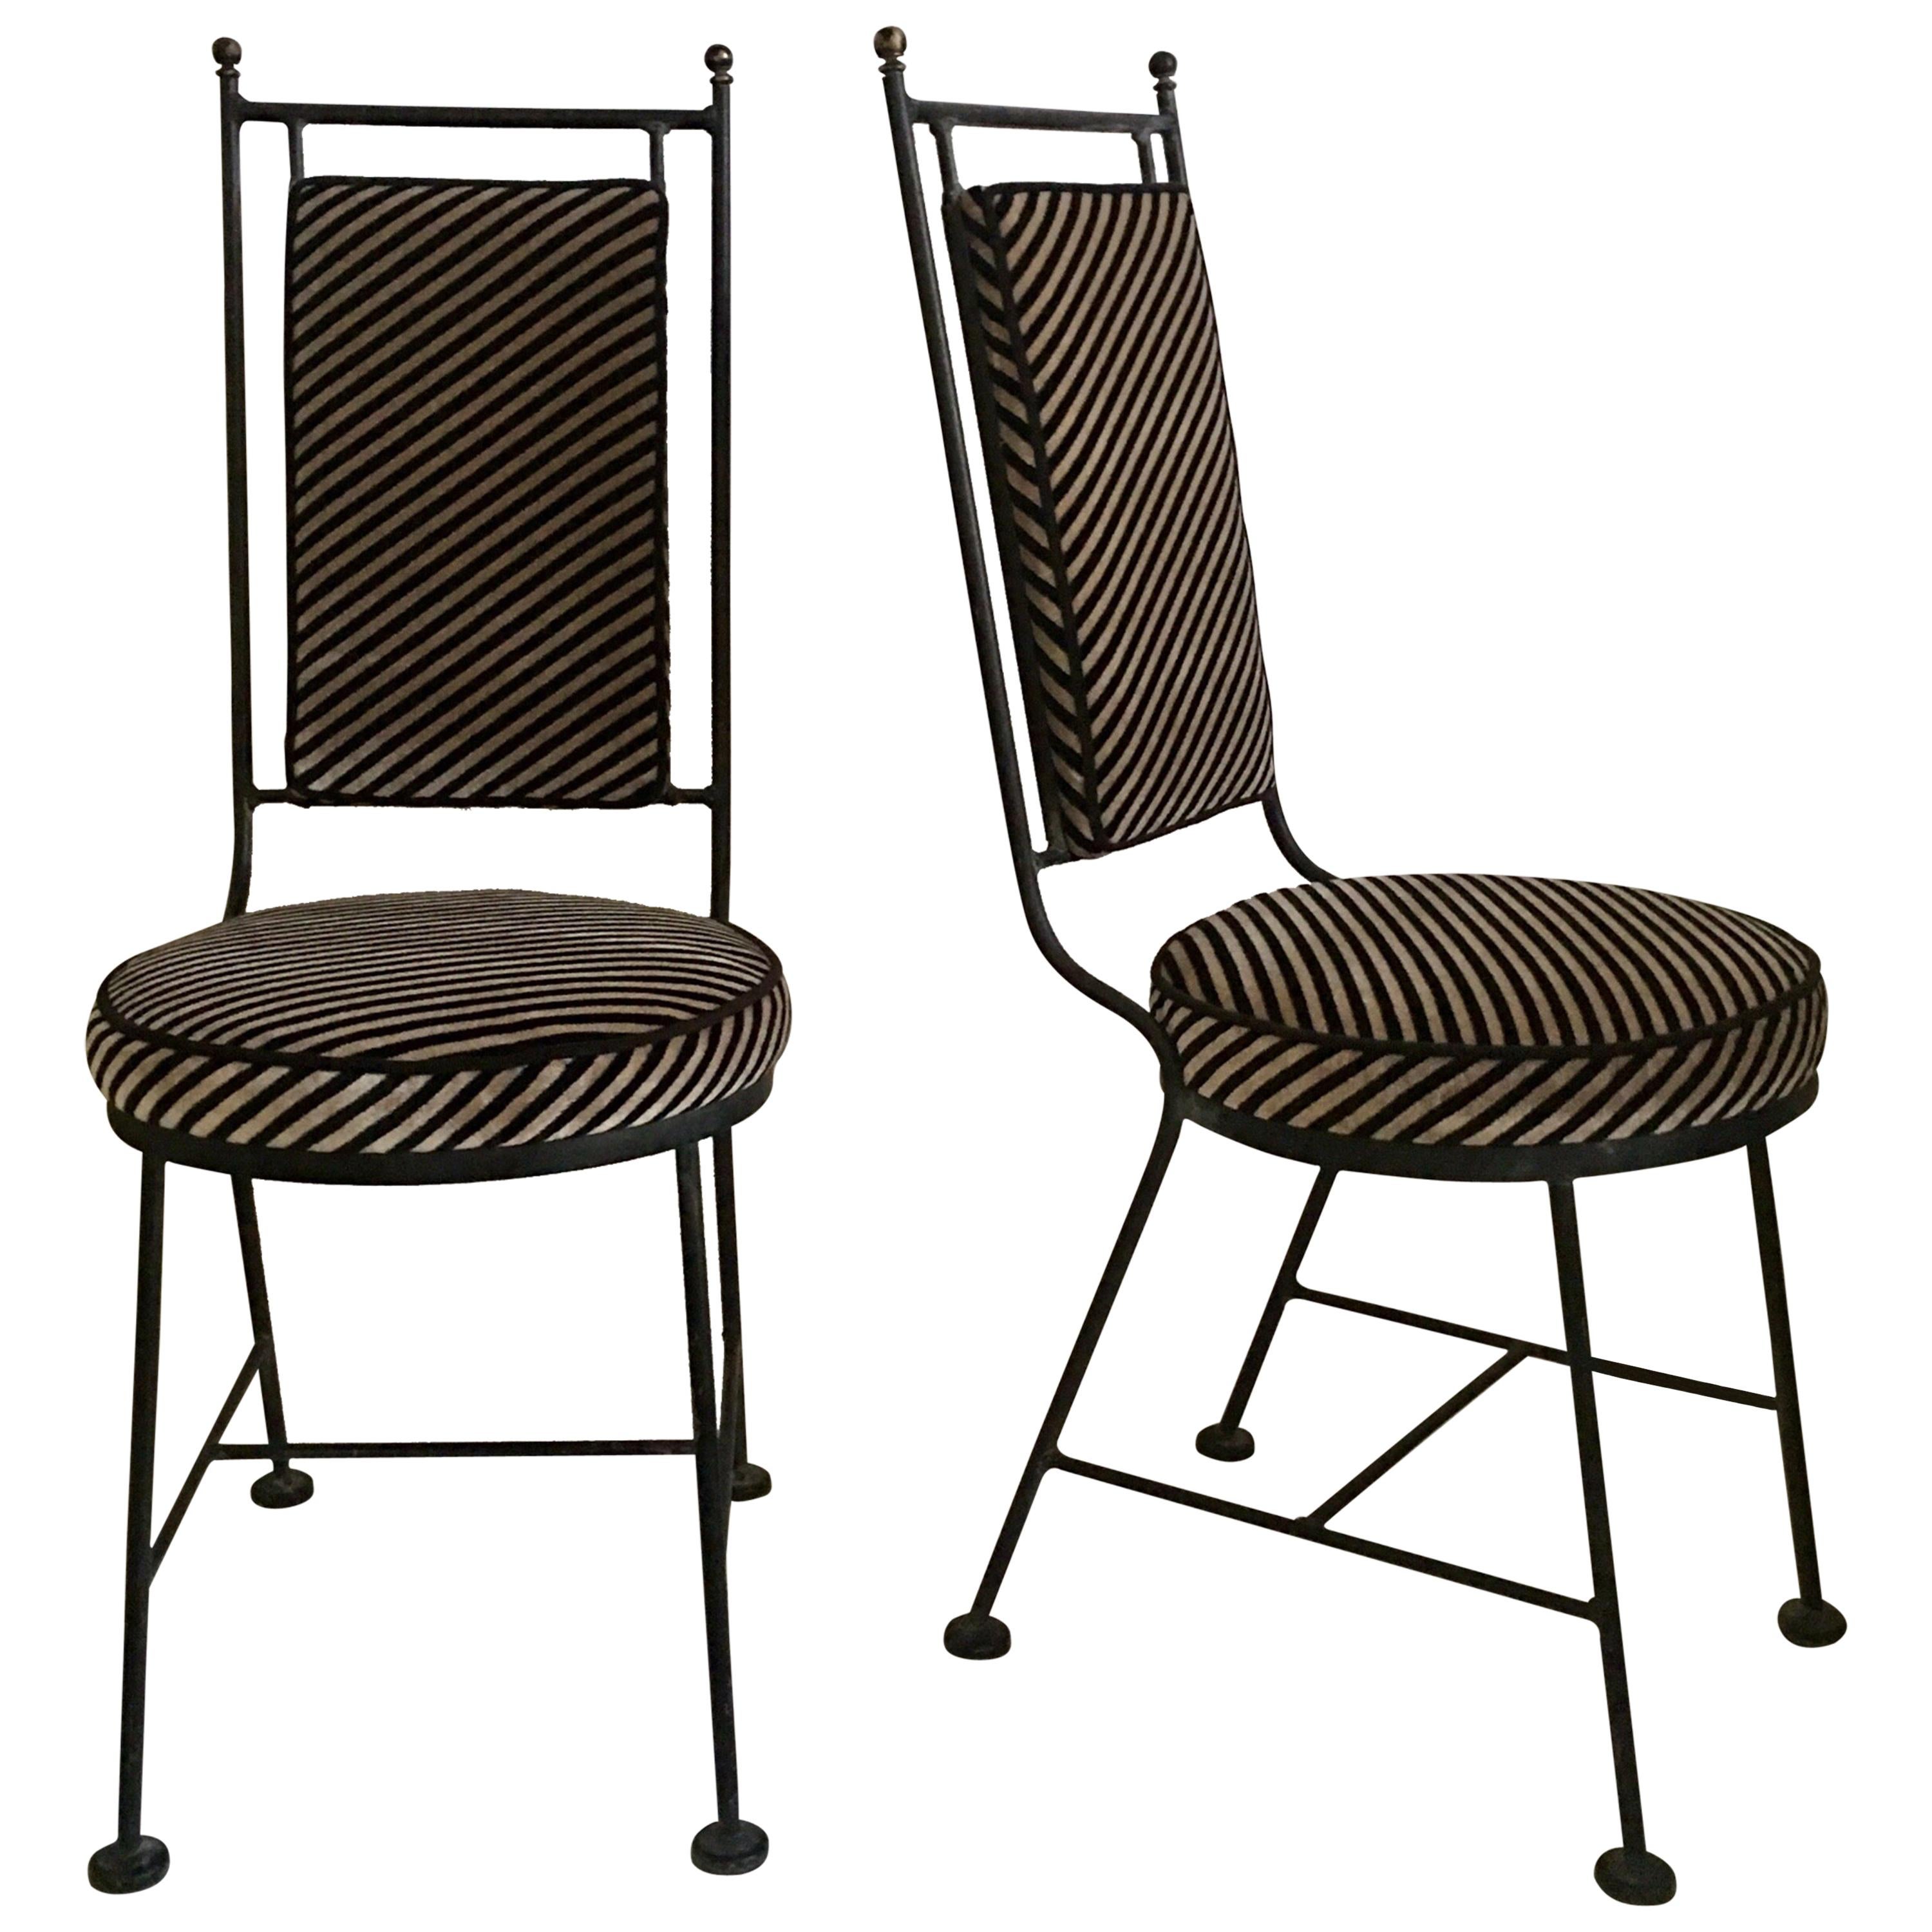 Sleek Mid-Century Modern Iron and Striped Salterini Style Chairs, Italian 